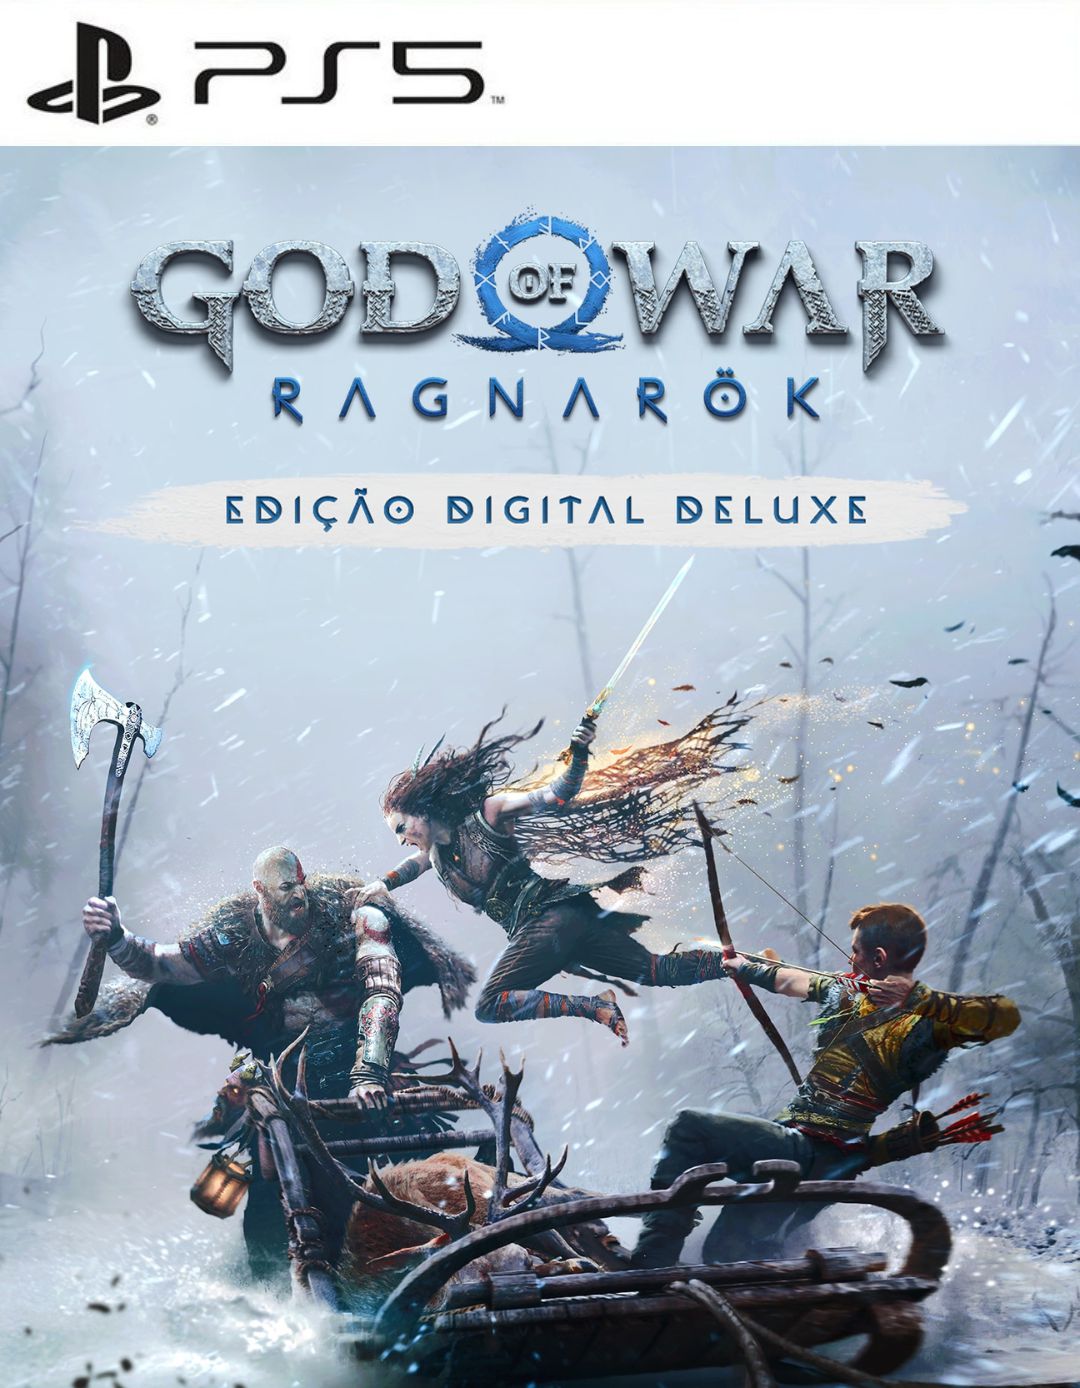 Jogo PS5 God of War Ragnarök